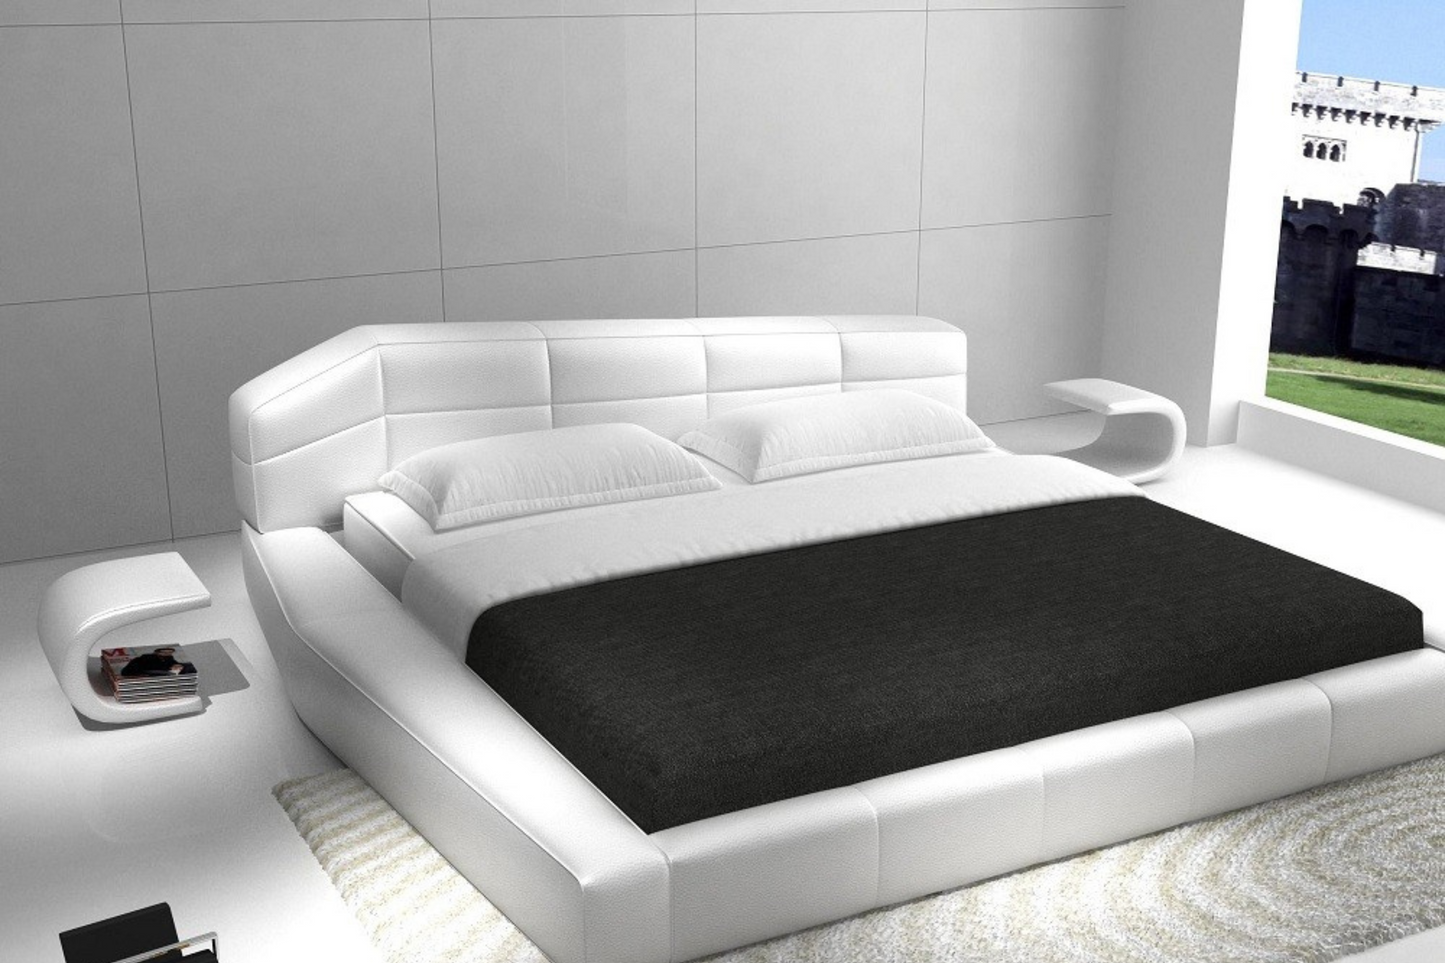 Dream Bedroom Bed SKU: 17835